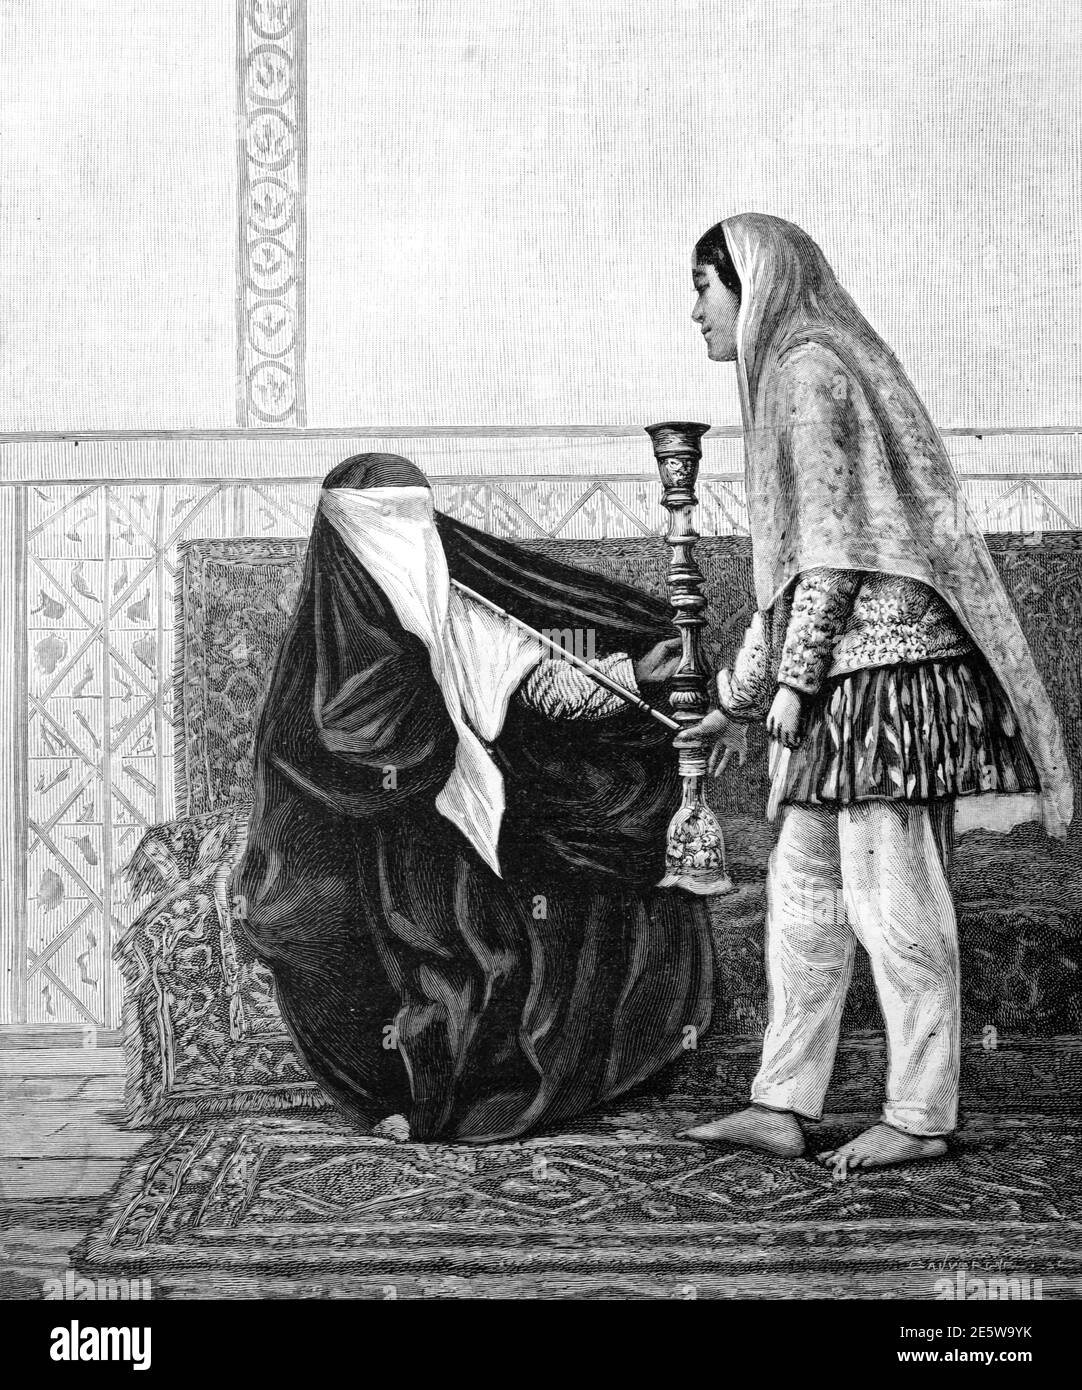 Persa o iraní Mujer usando niqab & fumar una shisha, tubería de agua, Hookah o Nargjhile & Slave o Siervo Shiraz Irán 1903 Ilustración Vintage o Grabado Foto de stock